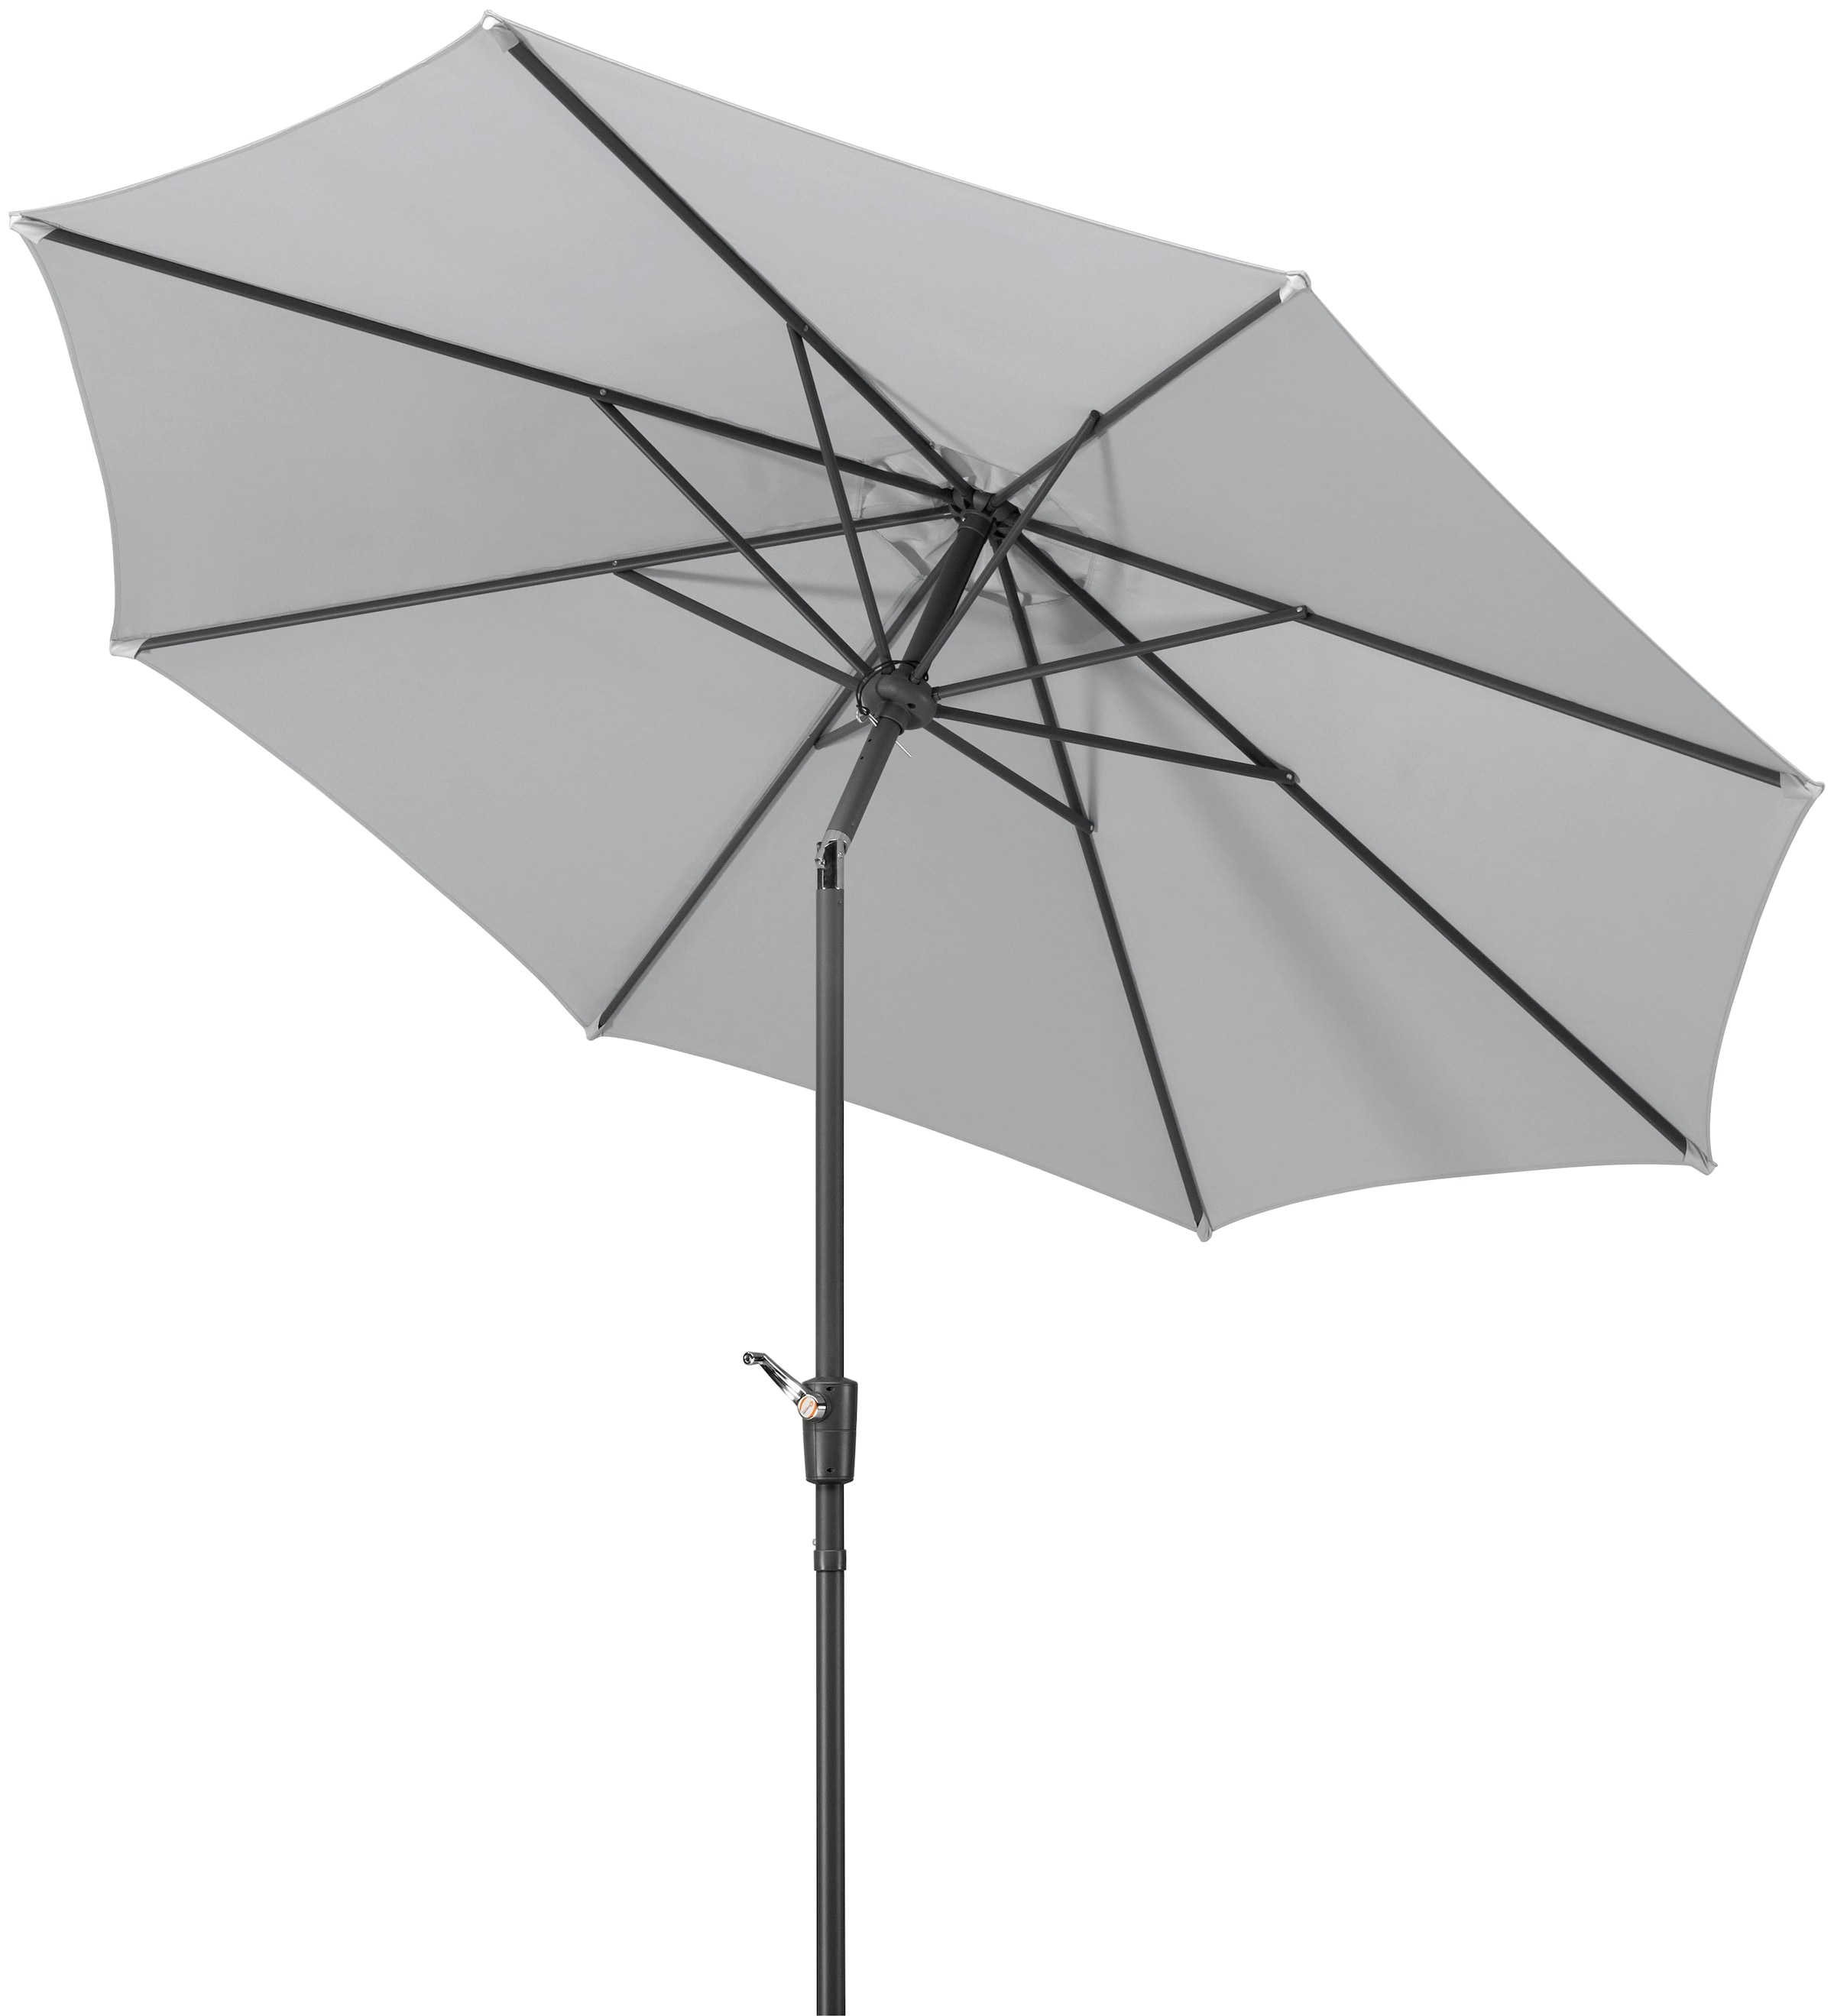 Schneider Schirme Marktschirm "Harlem", Durchmesser 270 cm, silbergrau, rund, ohne Schirmständer